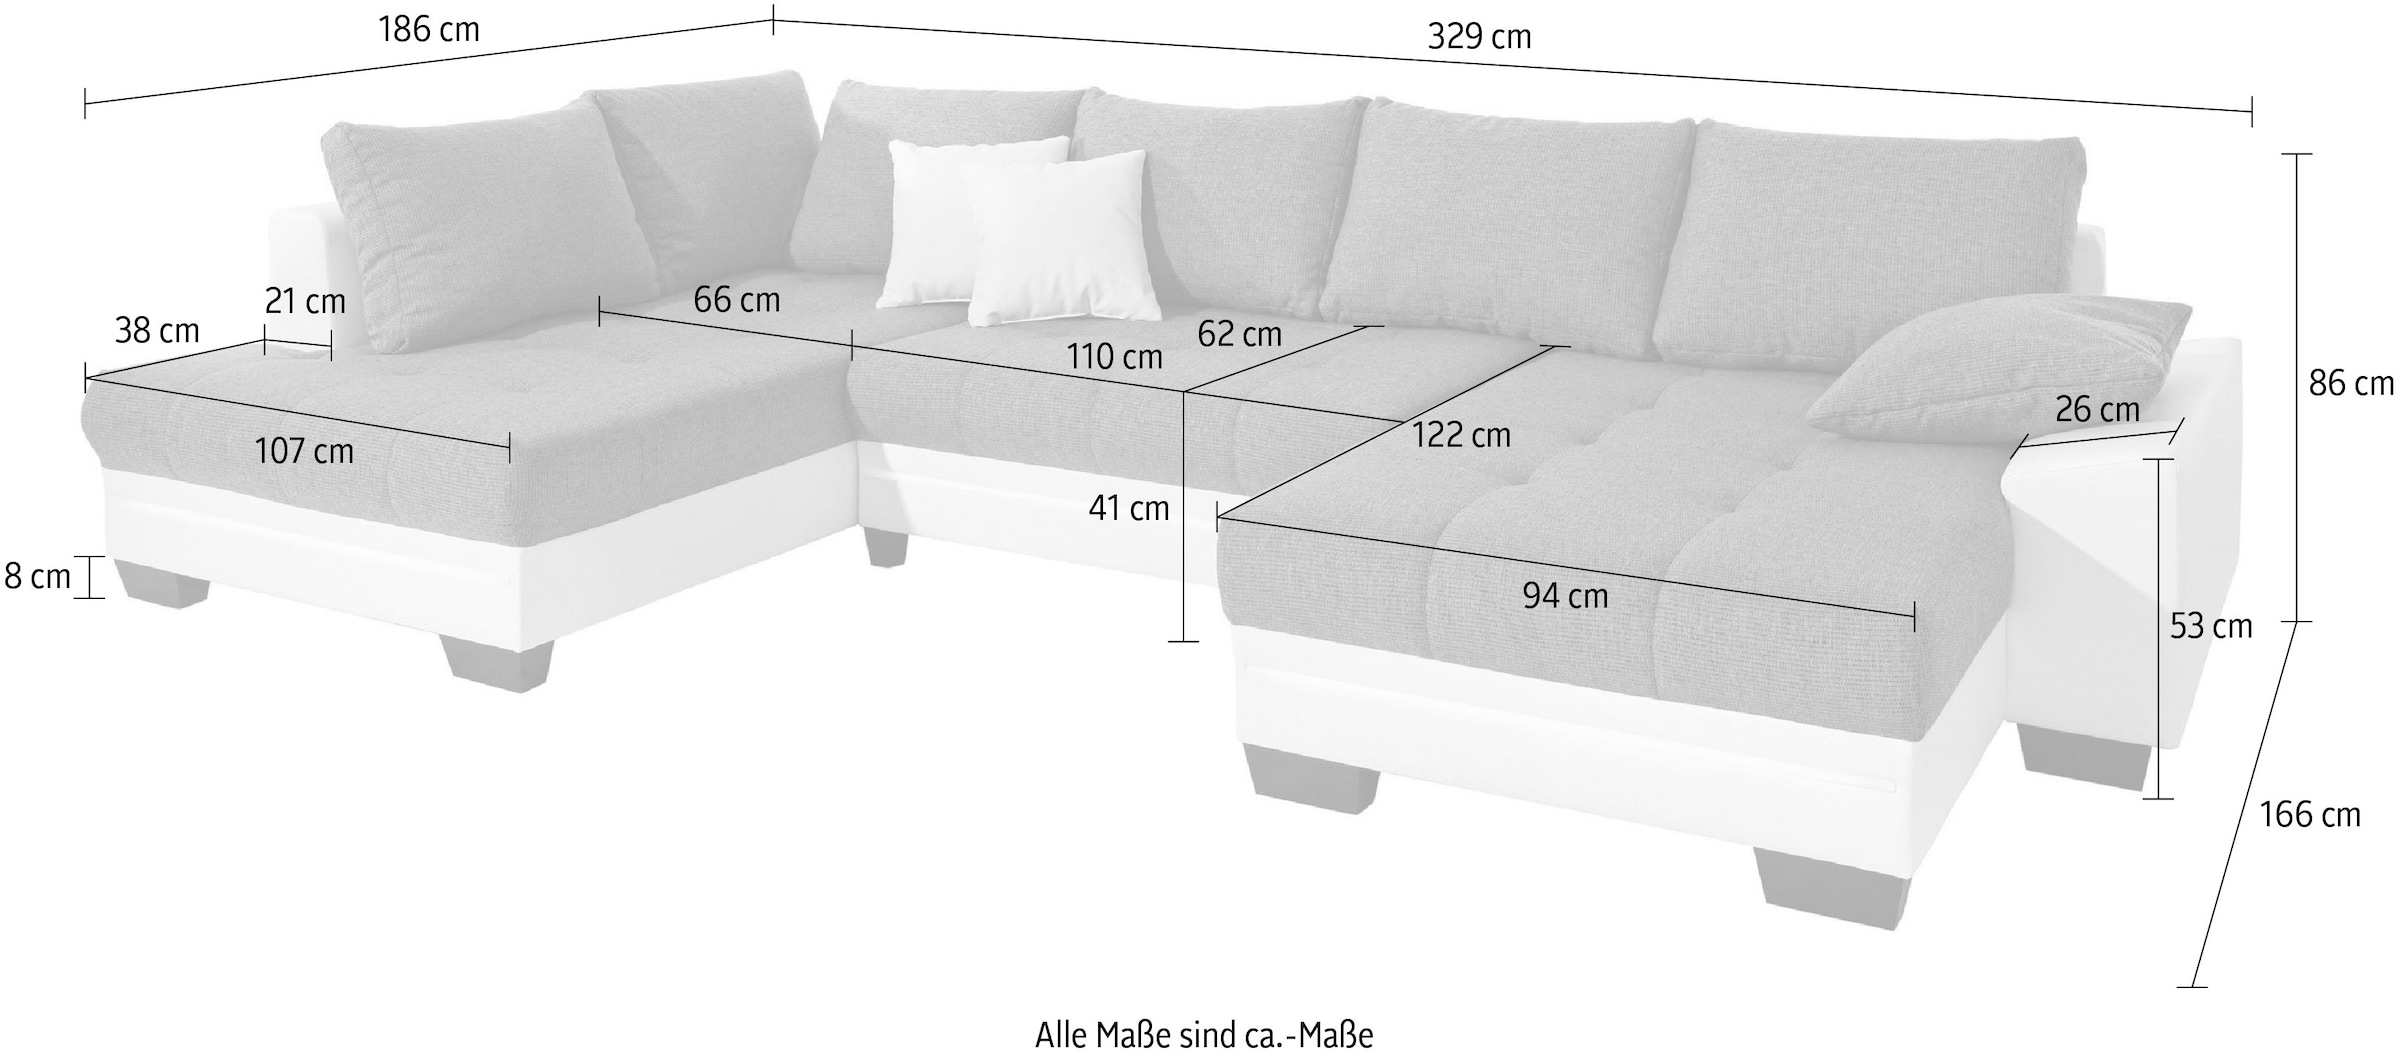 Mr. Couch Wohnlandschaft »Nikita U-Form«, Wahlweise mit Kaltschaum (140kg Belastung/Sitz), mit RGB-Beleuchtung